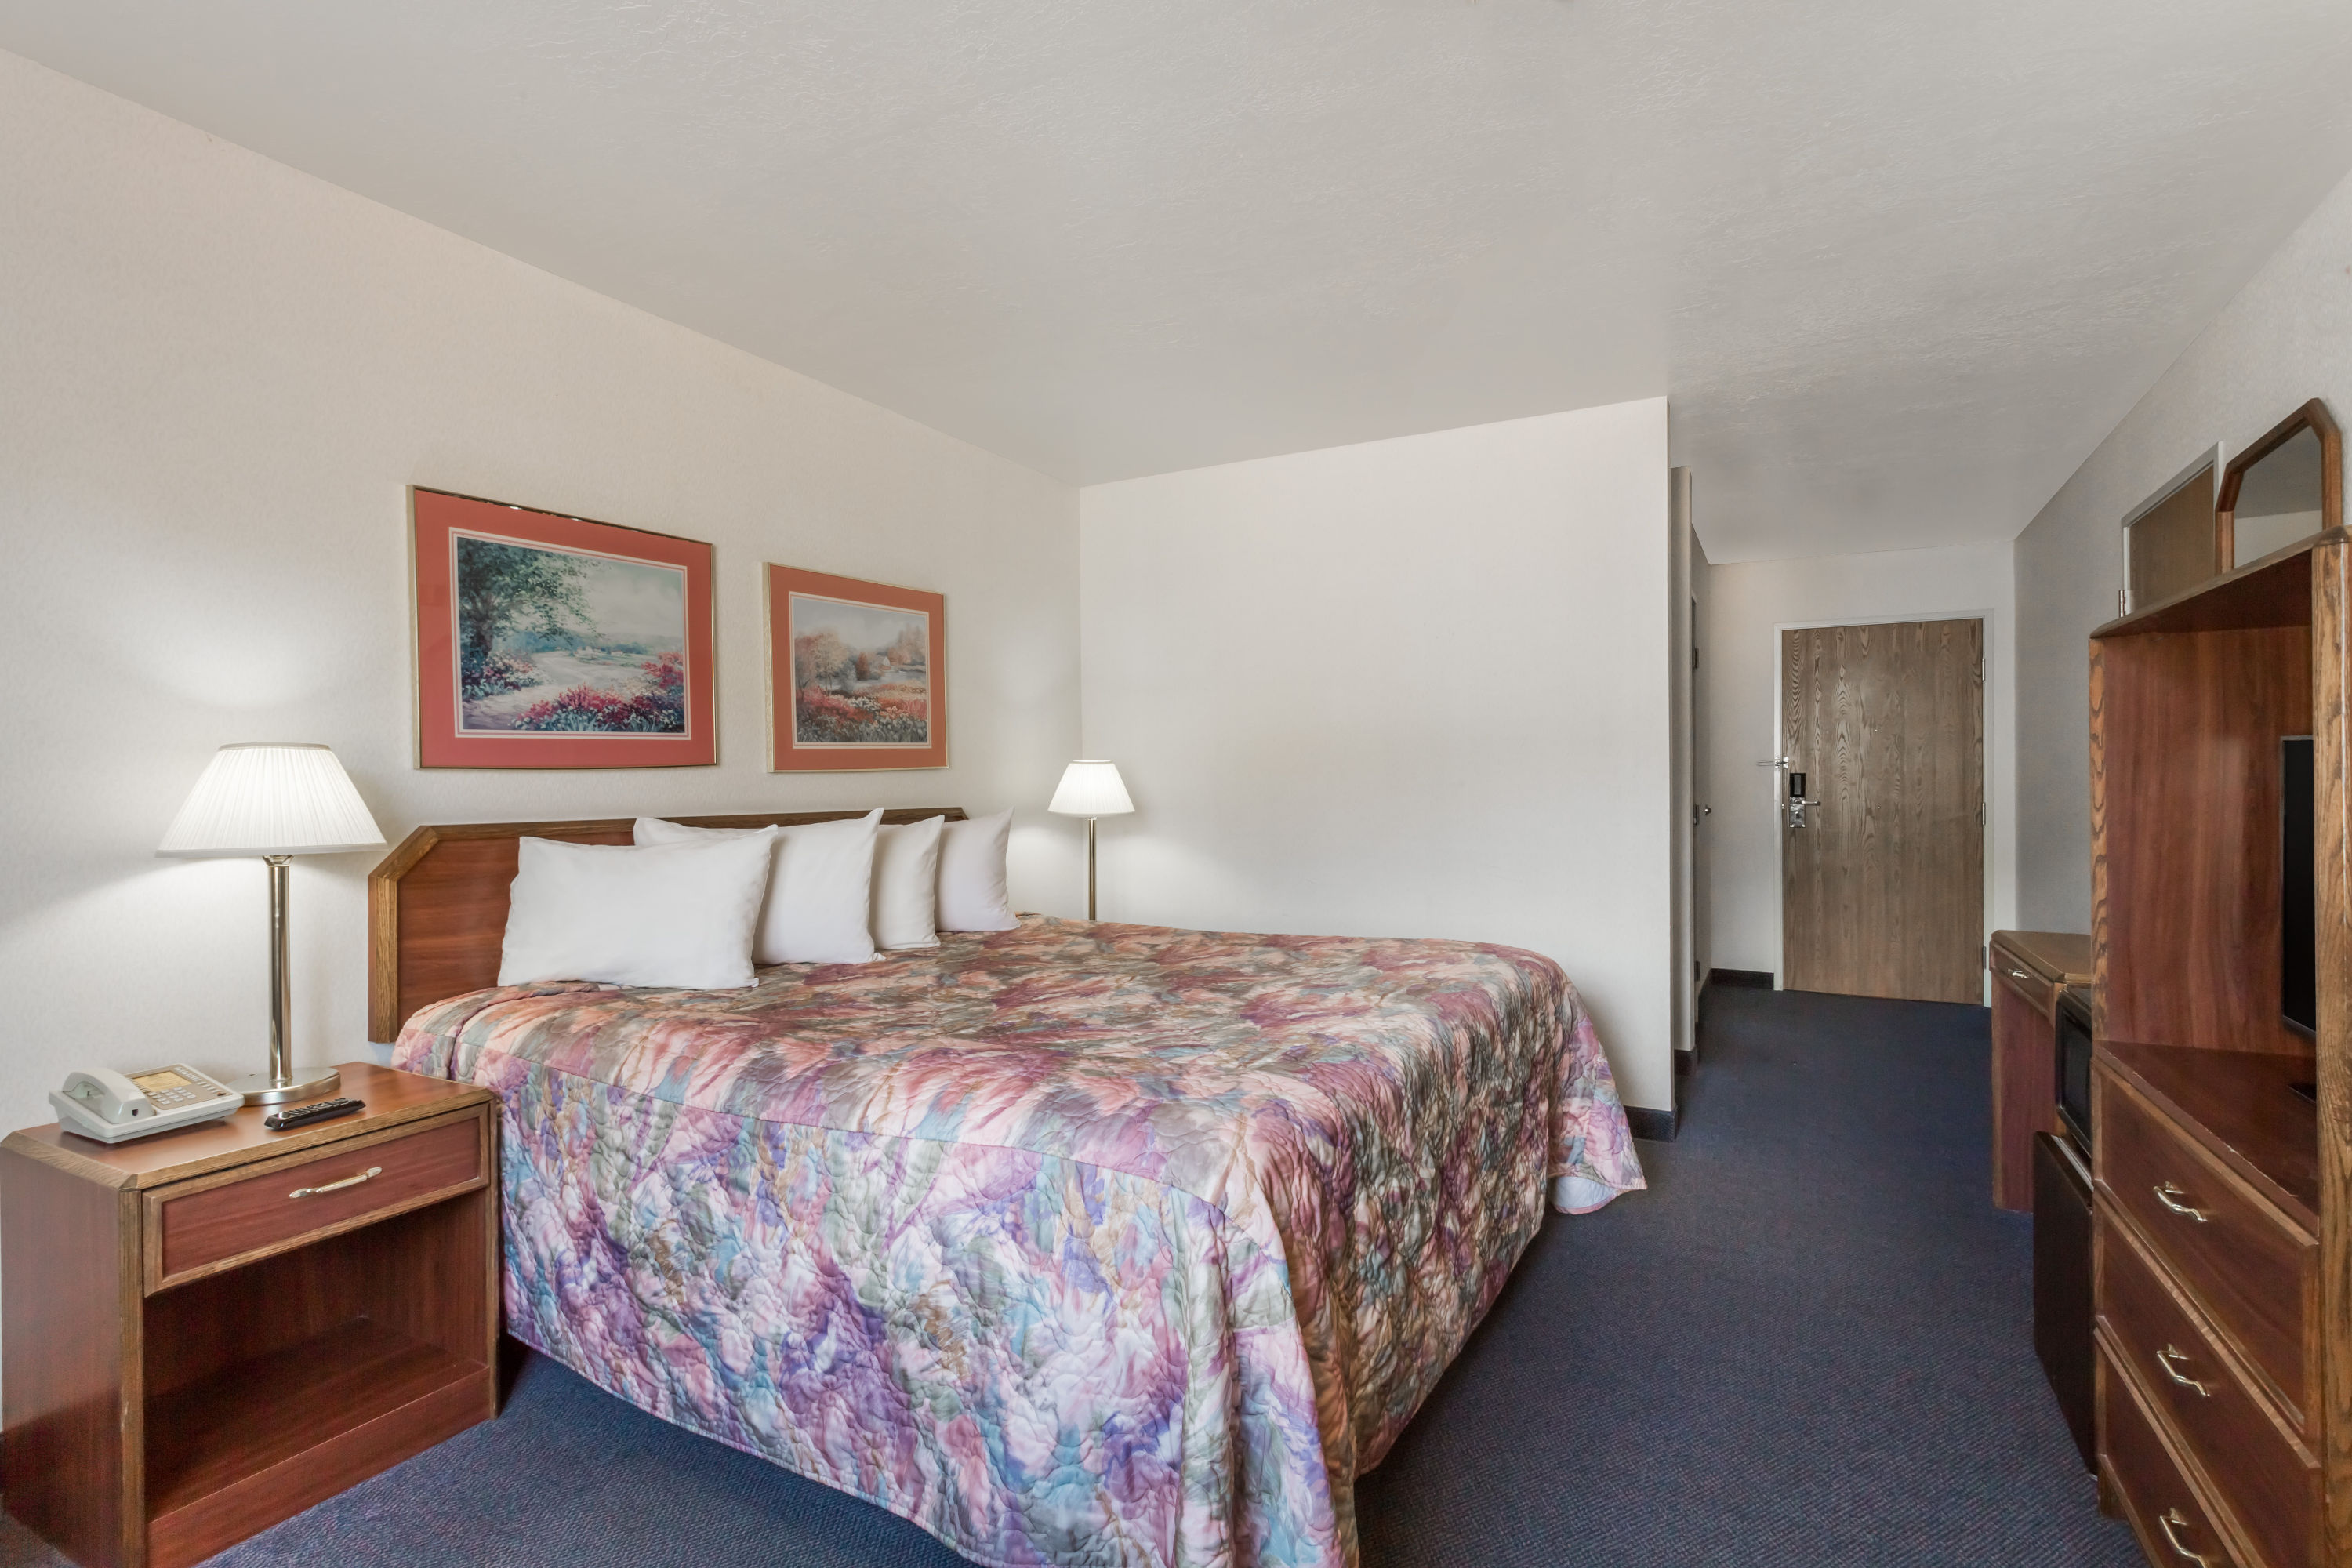 Days Inn by Wyndham Torrey Capital Reef | Torrey, UT Hotels